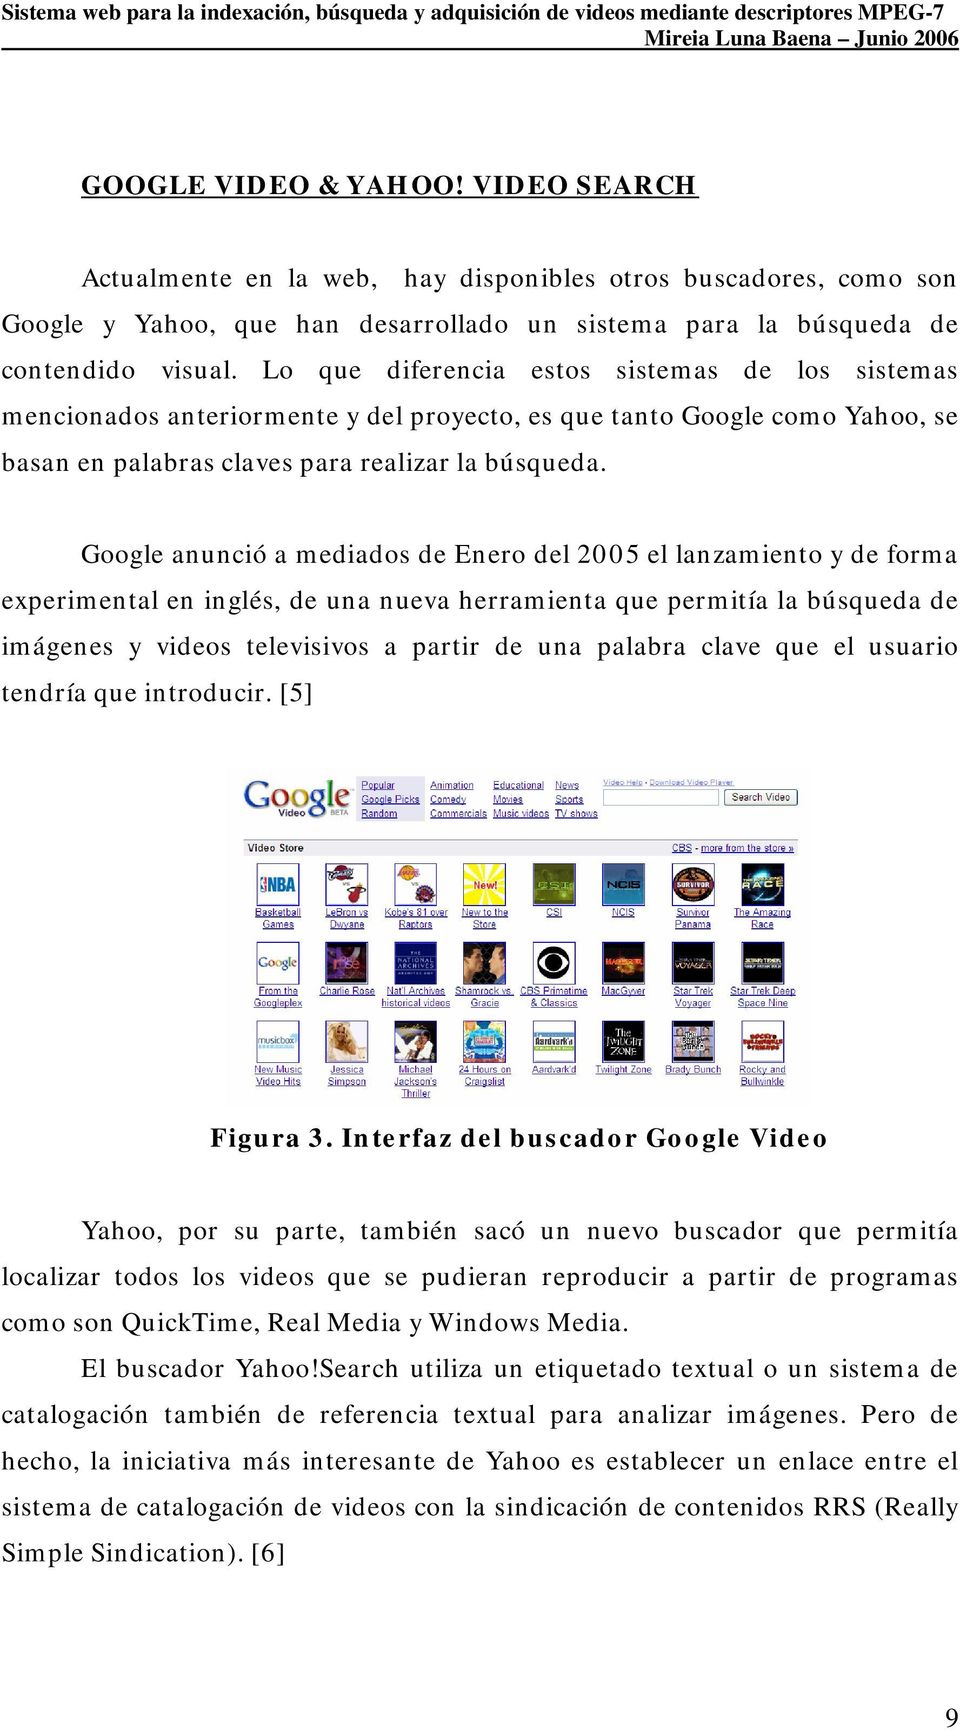 Google anunció a mediados de Enero del 2005 el lanzamiento y de forma experimental en inglés, de una nueva herramienta que permitía la búsqueda de imágenes y videos televisivos a partir de una